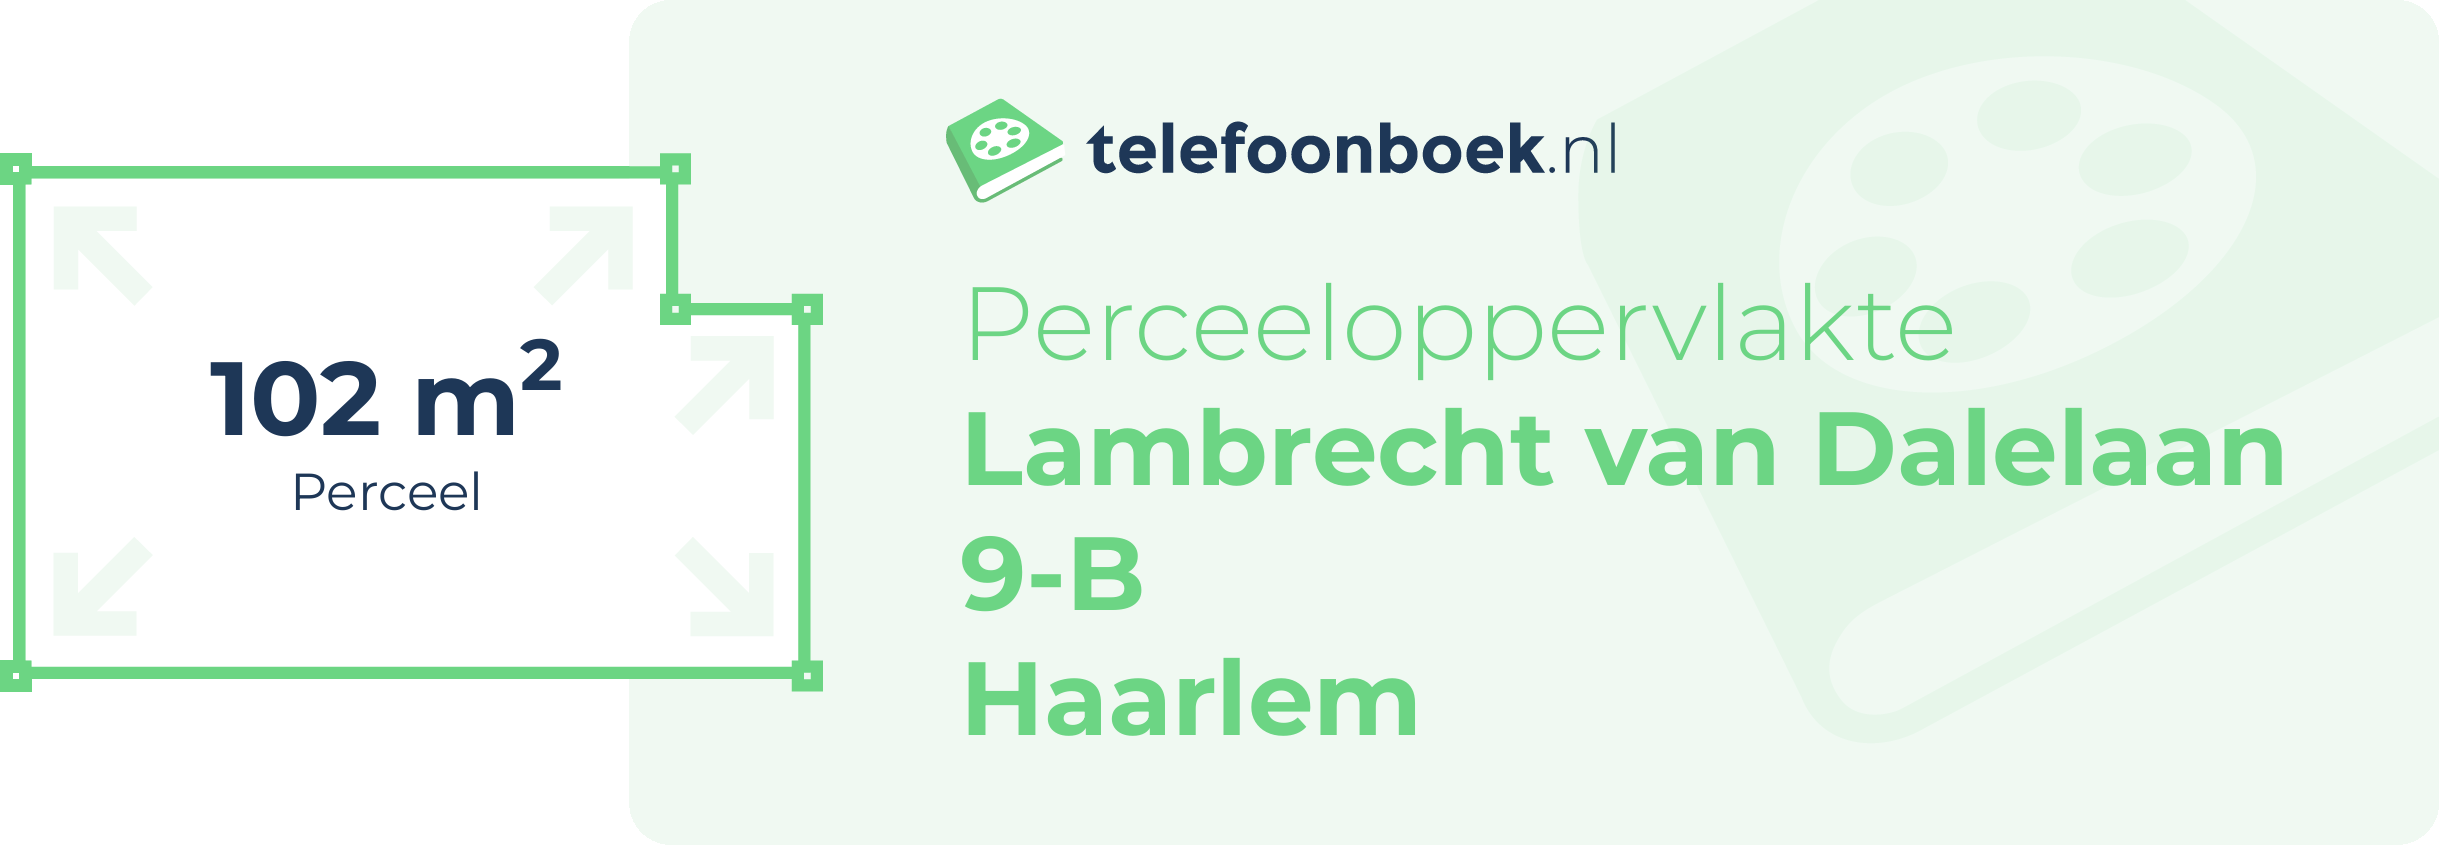 Perceeloppervlakte Lambrecht Van Dalelaan 9-B Haarlem